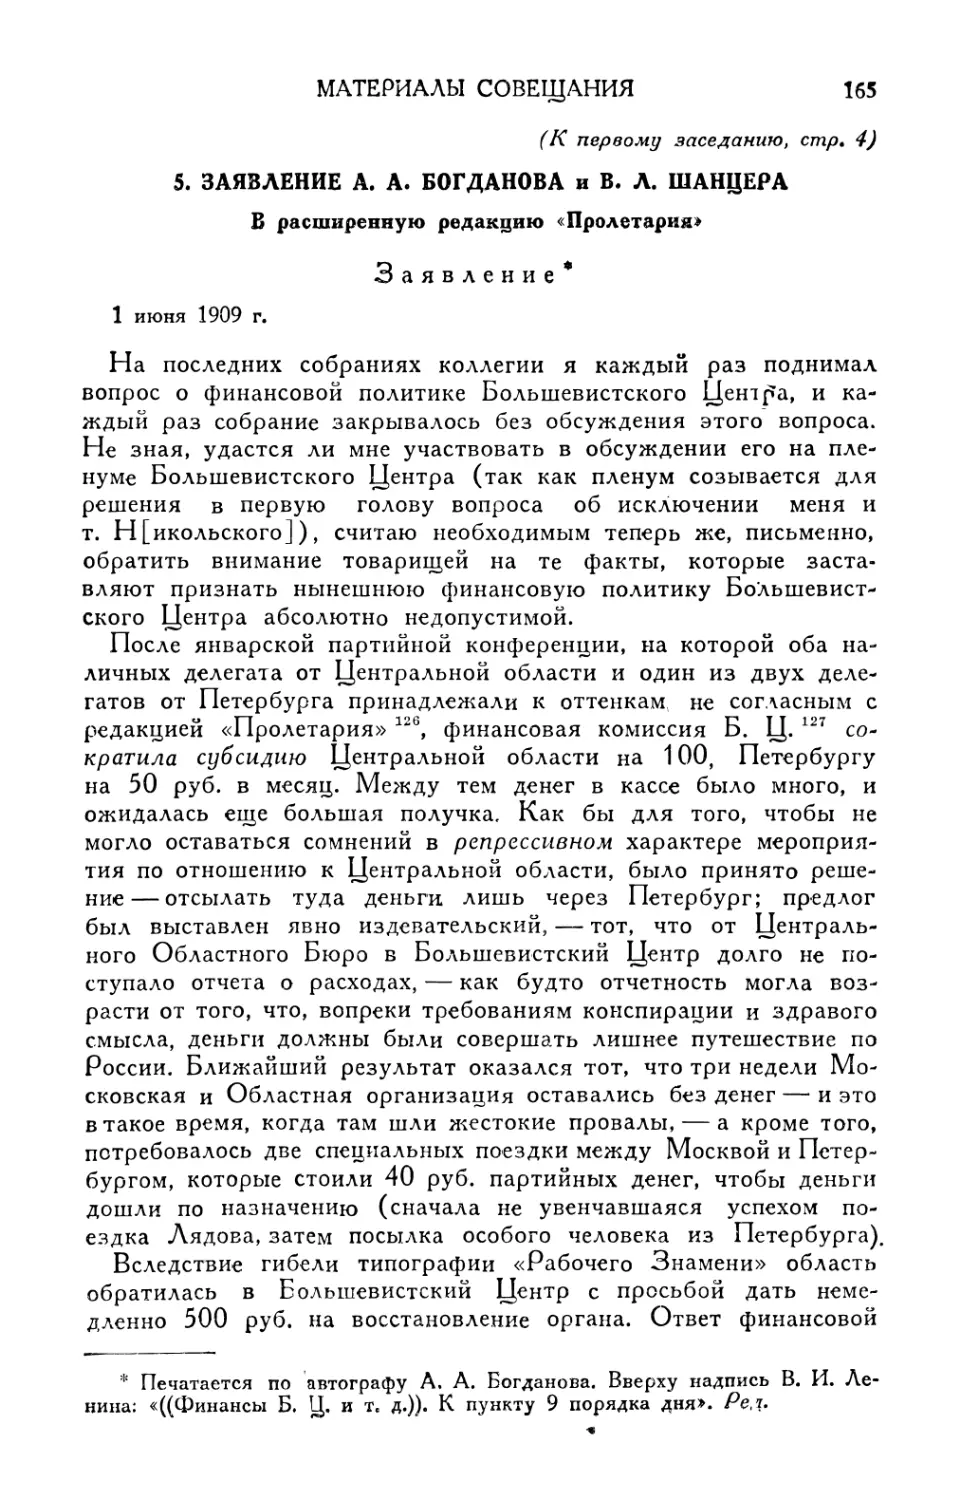 5. Заявление А. А. Богданова и В. Л. Шанцера 1 июня 1909 г.